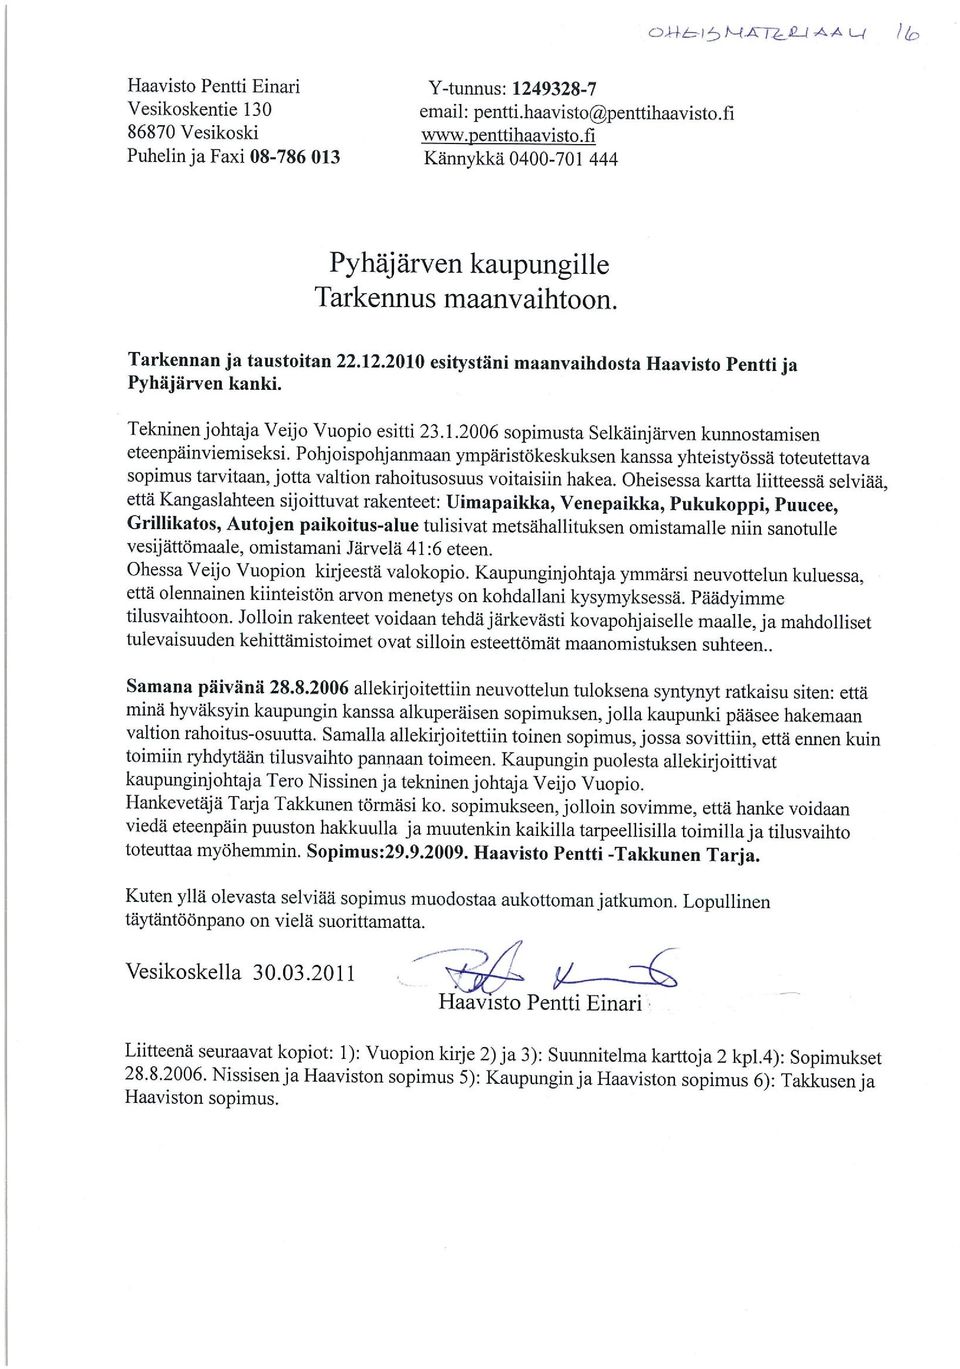 2010 esitystäni maanvaihdosta Haavisto Pentti ja Pyhäjärven kanki. Tekninen johtaja Veijo Vuopio esitti 23.1.2006 sopimusta Selkäinjärven kunnostamisen eteenpäinviemiseksi.